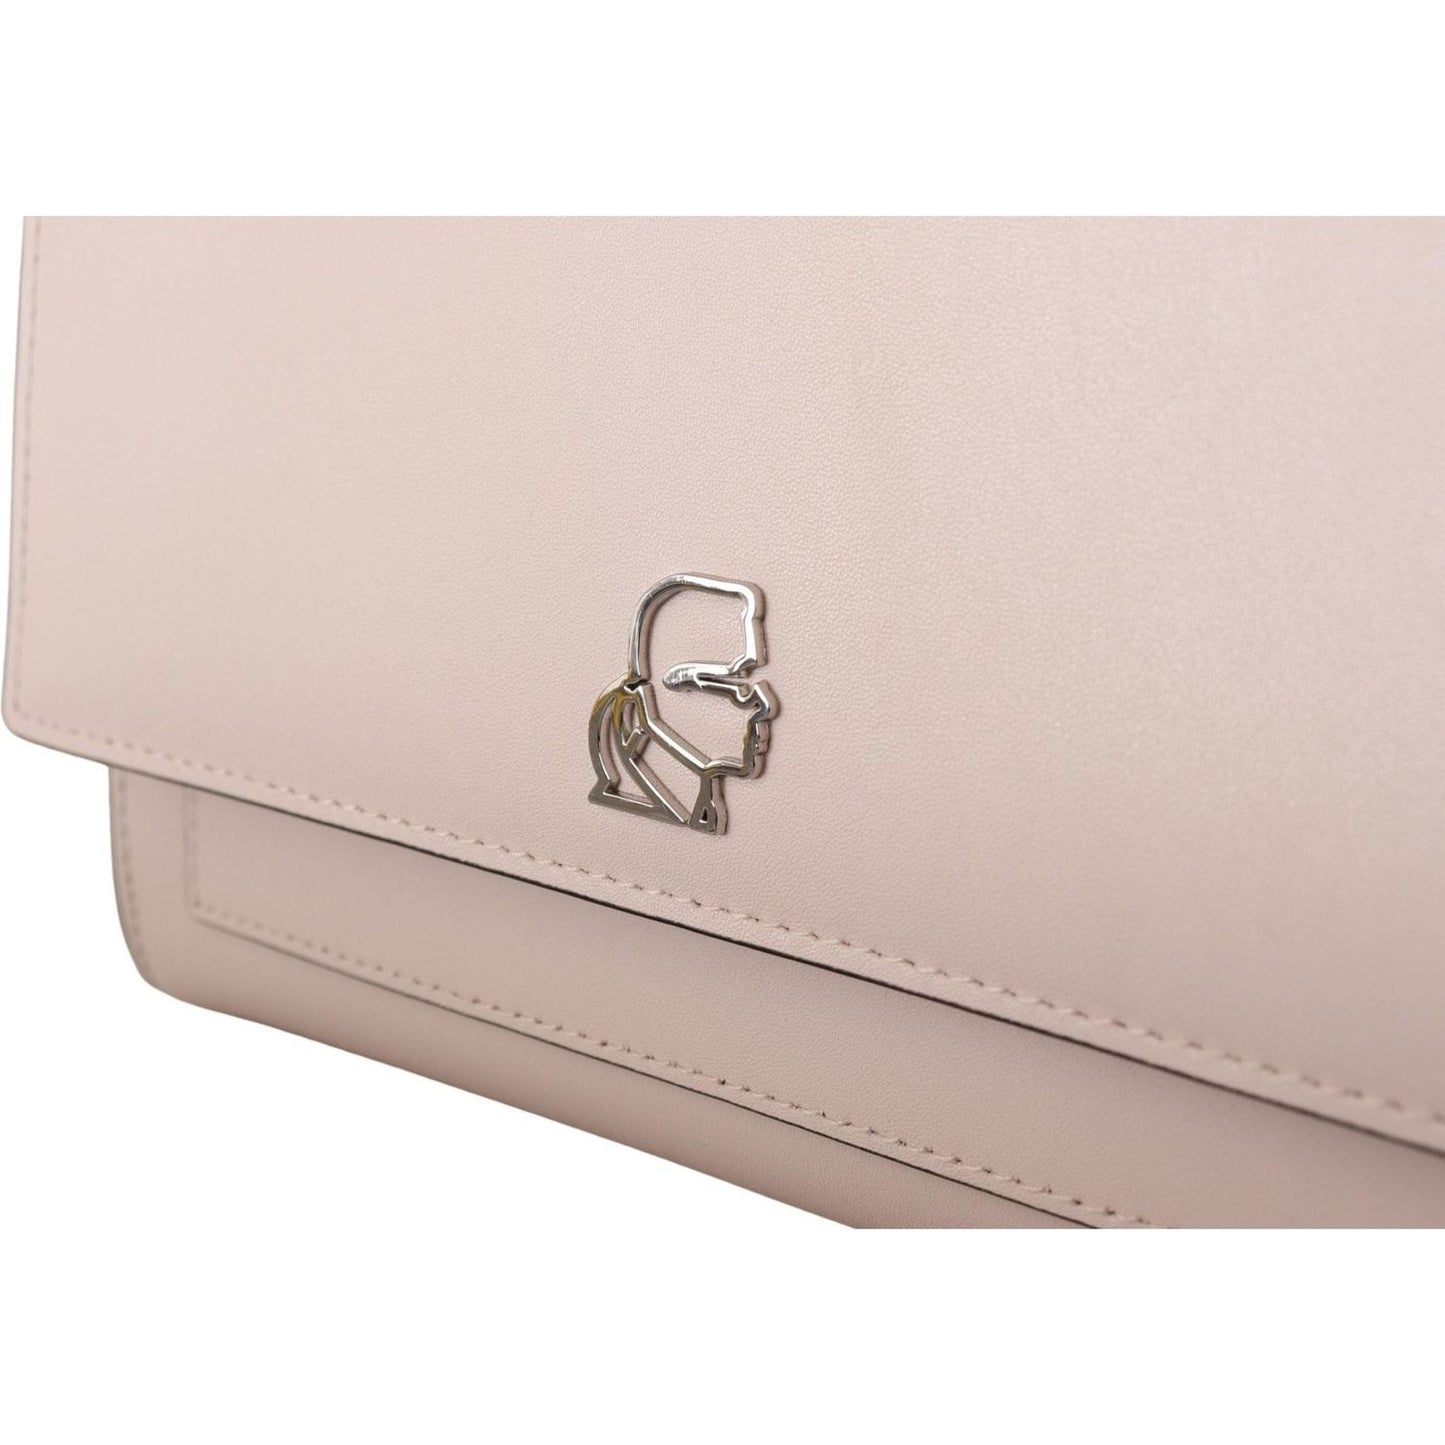 Karl Lagerfeld Mauve Elegance Leather Shoulder Bag light-pink-leather-shoulder-bag IMG_7490-scaled-978c4aee-8e2.jpg